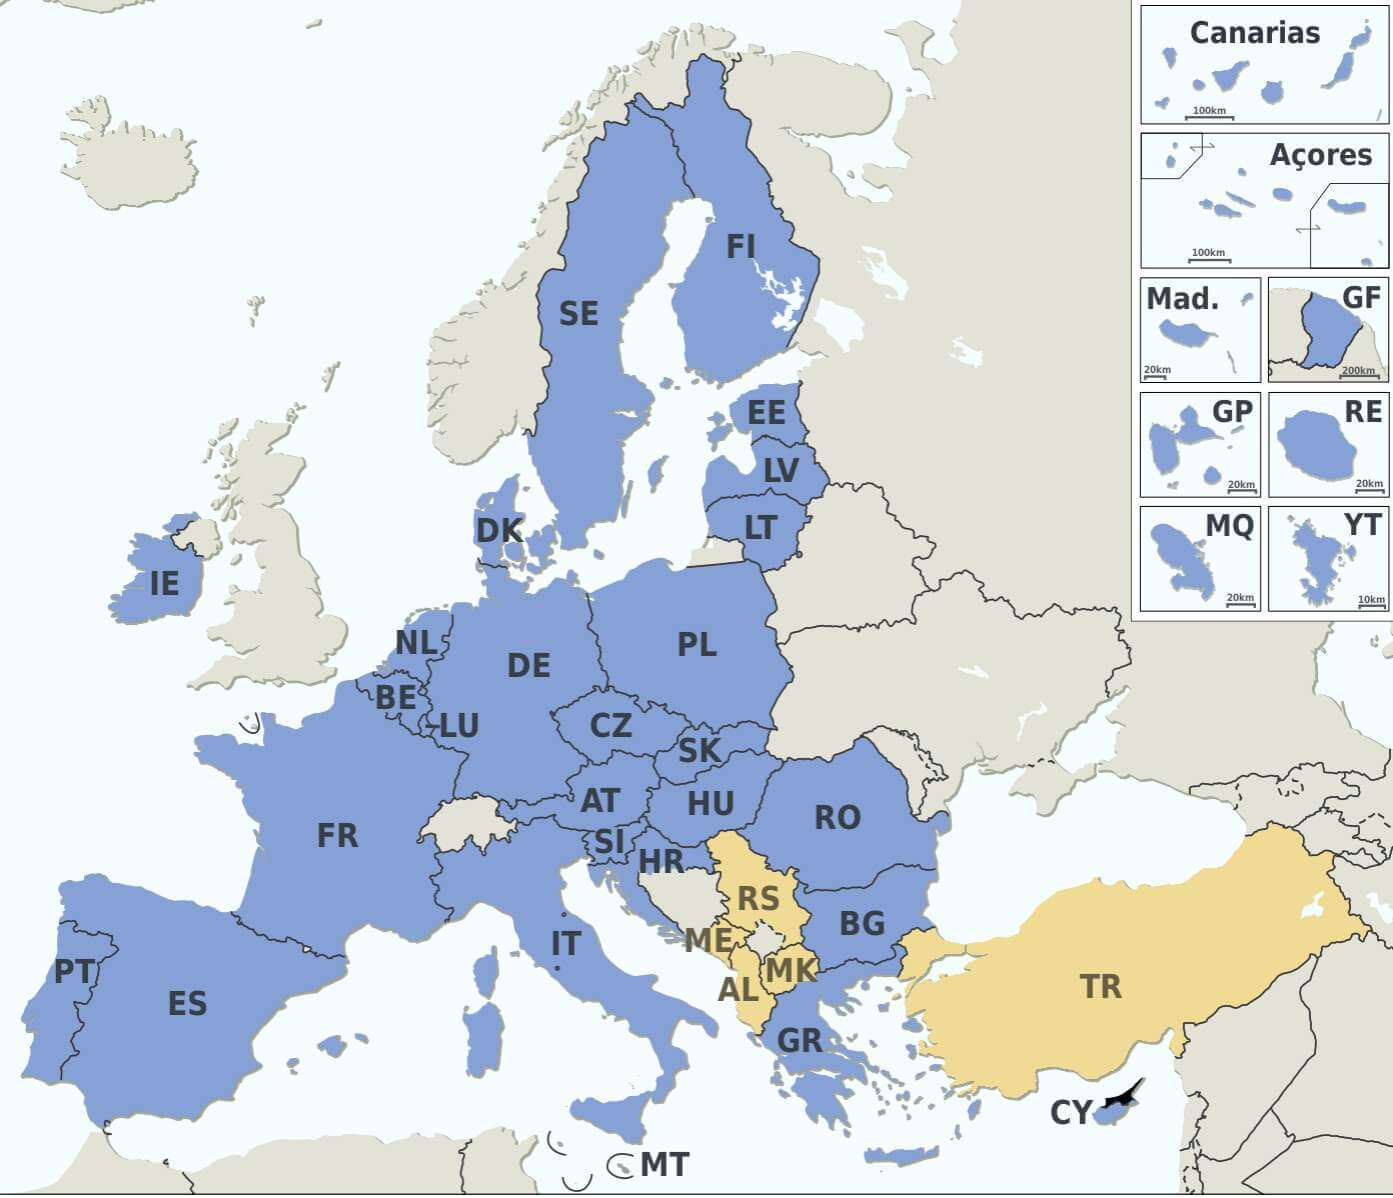 Tarile din uniunea europeana si istoria uniunii – 27 de state membre